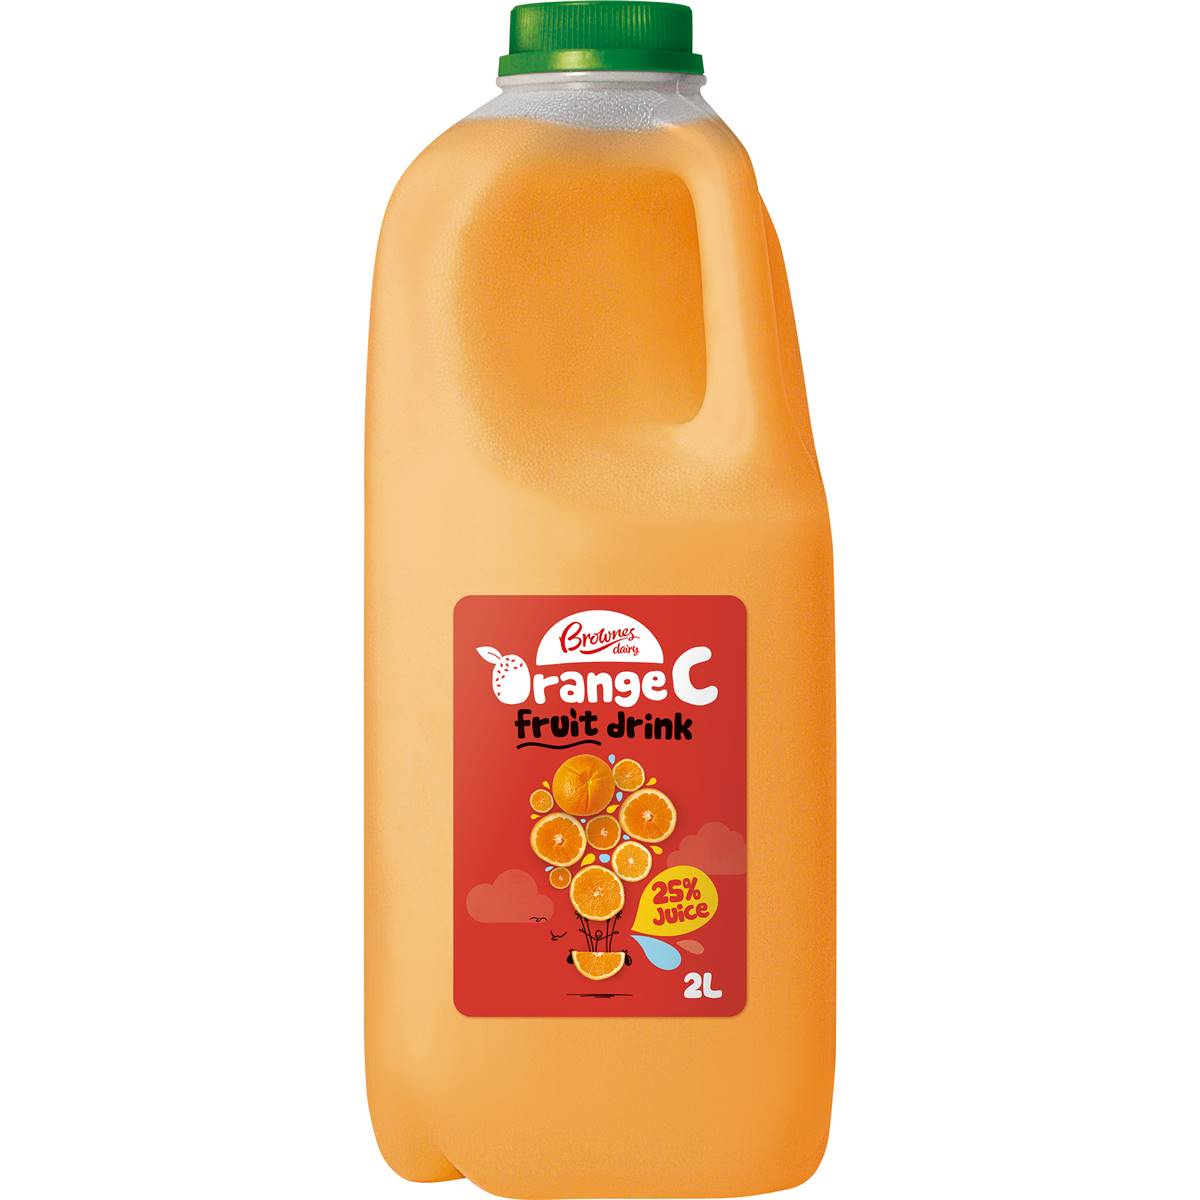 Brownes Orange C Fruit Juice 2L